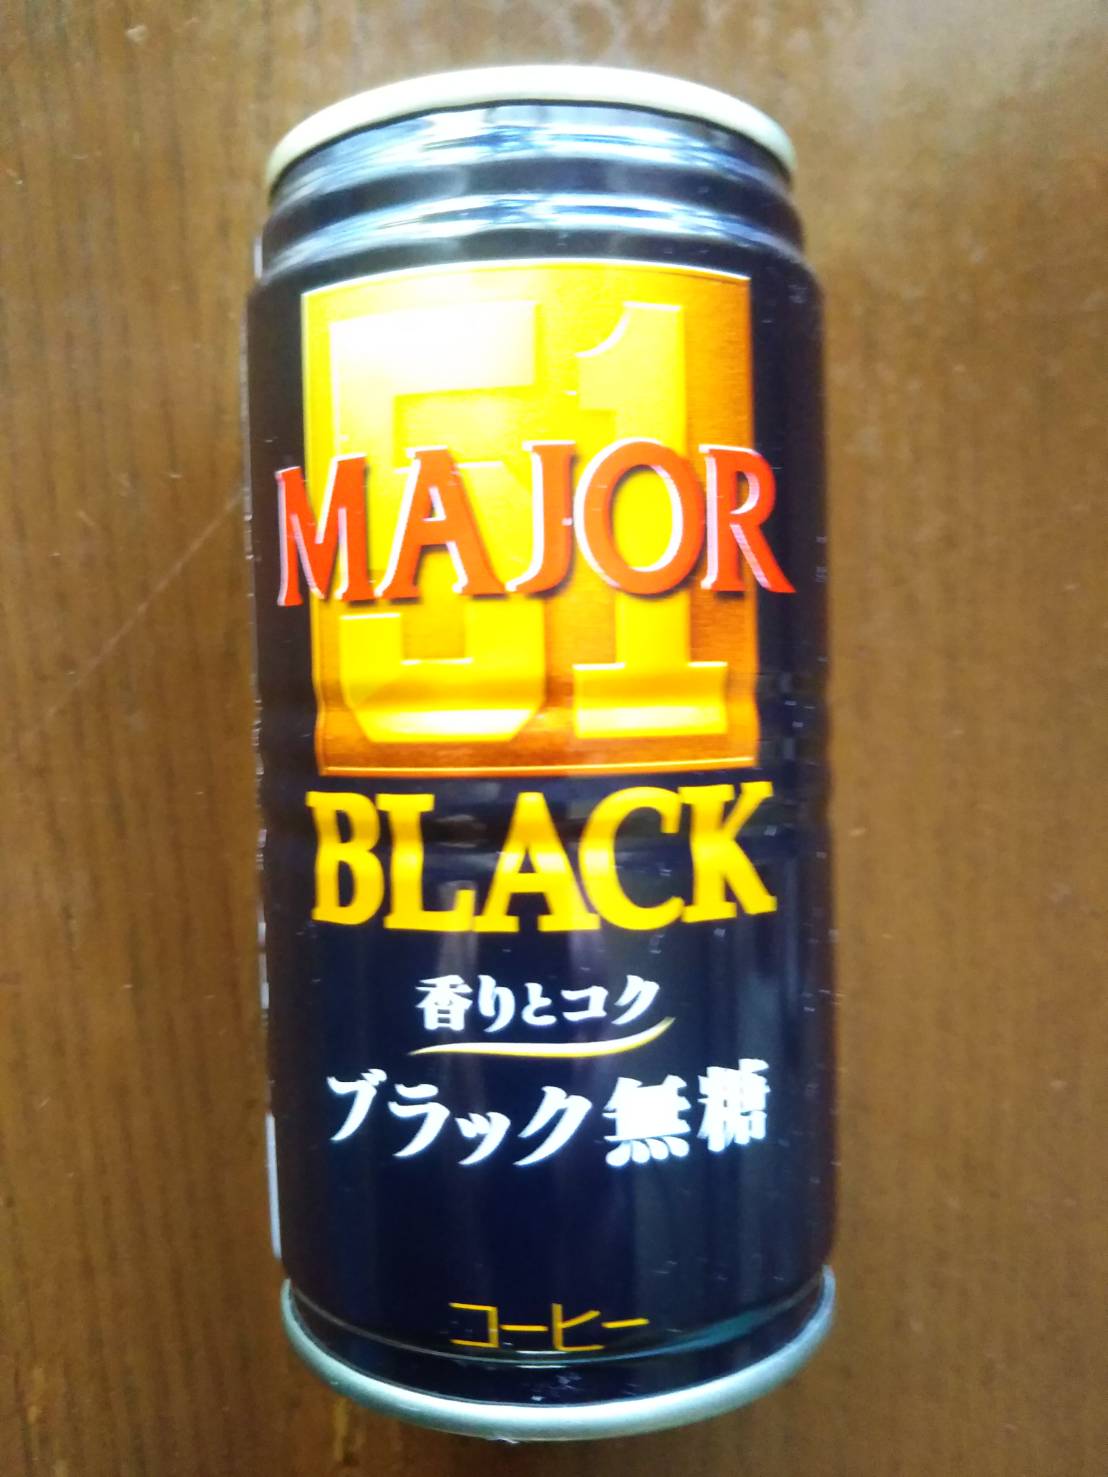 日本ヒルスコーヒーのMAJOR BLACK